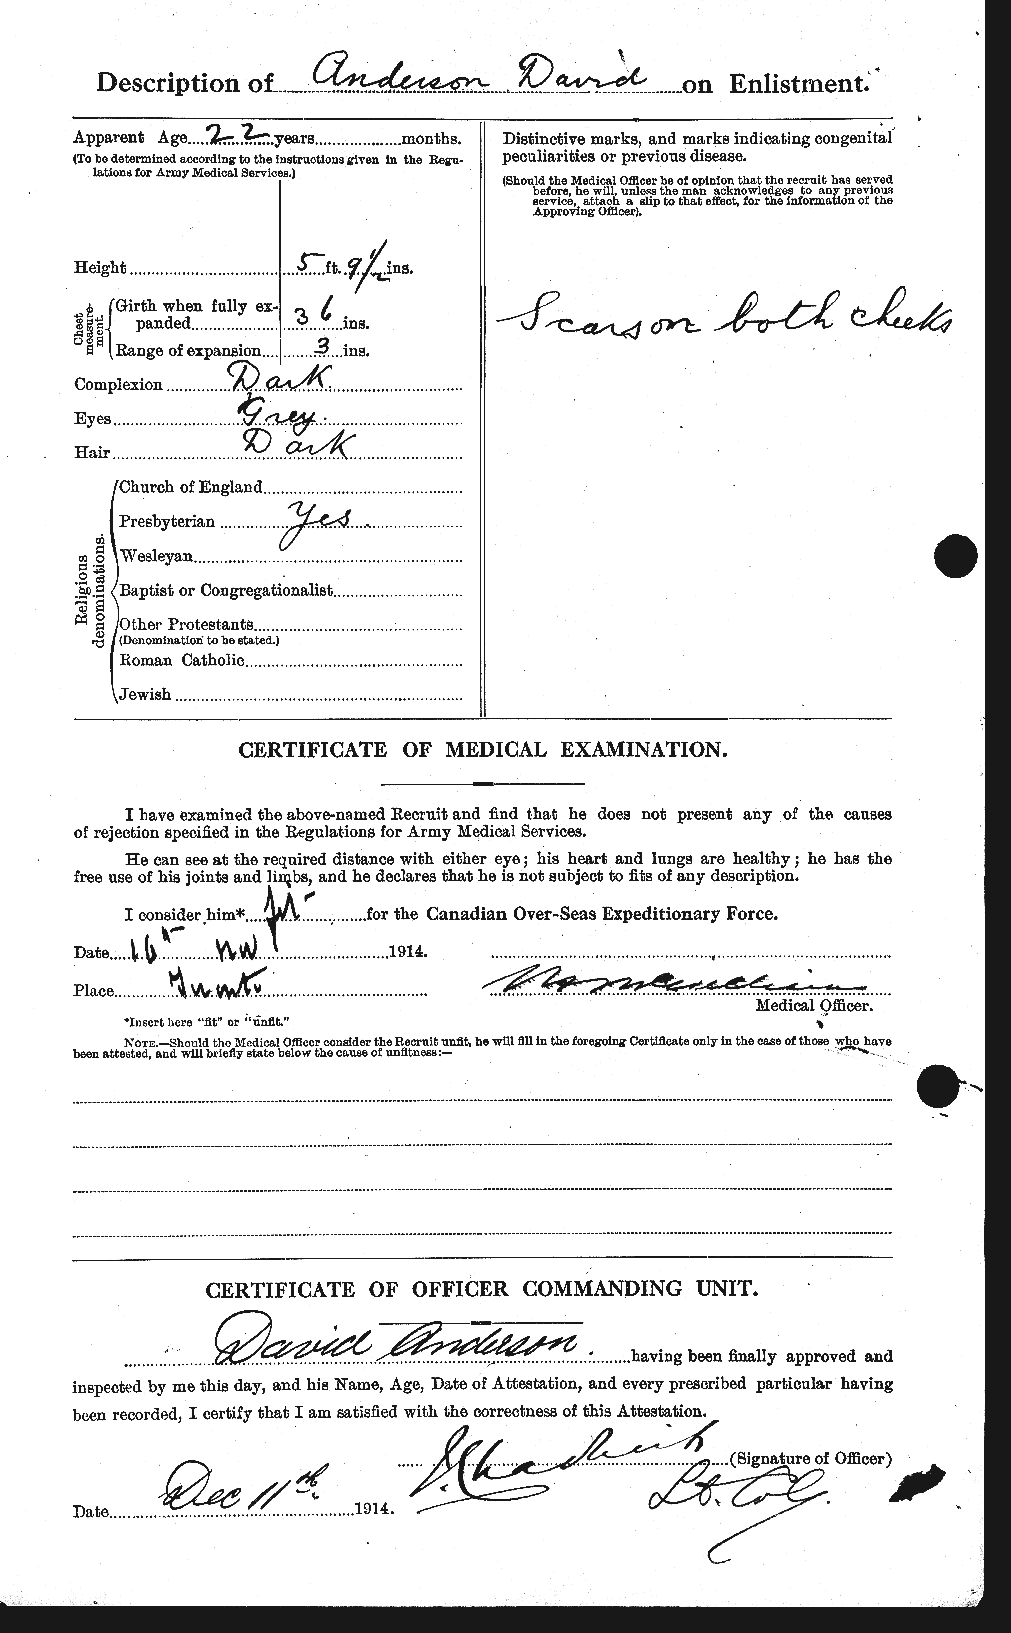 Dossiers du Personnel de la Première Guerre mondiale - CEC 210031b